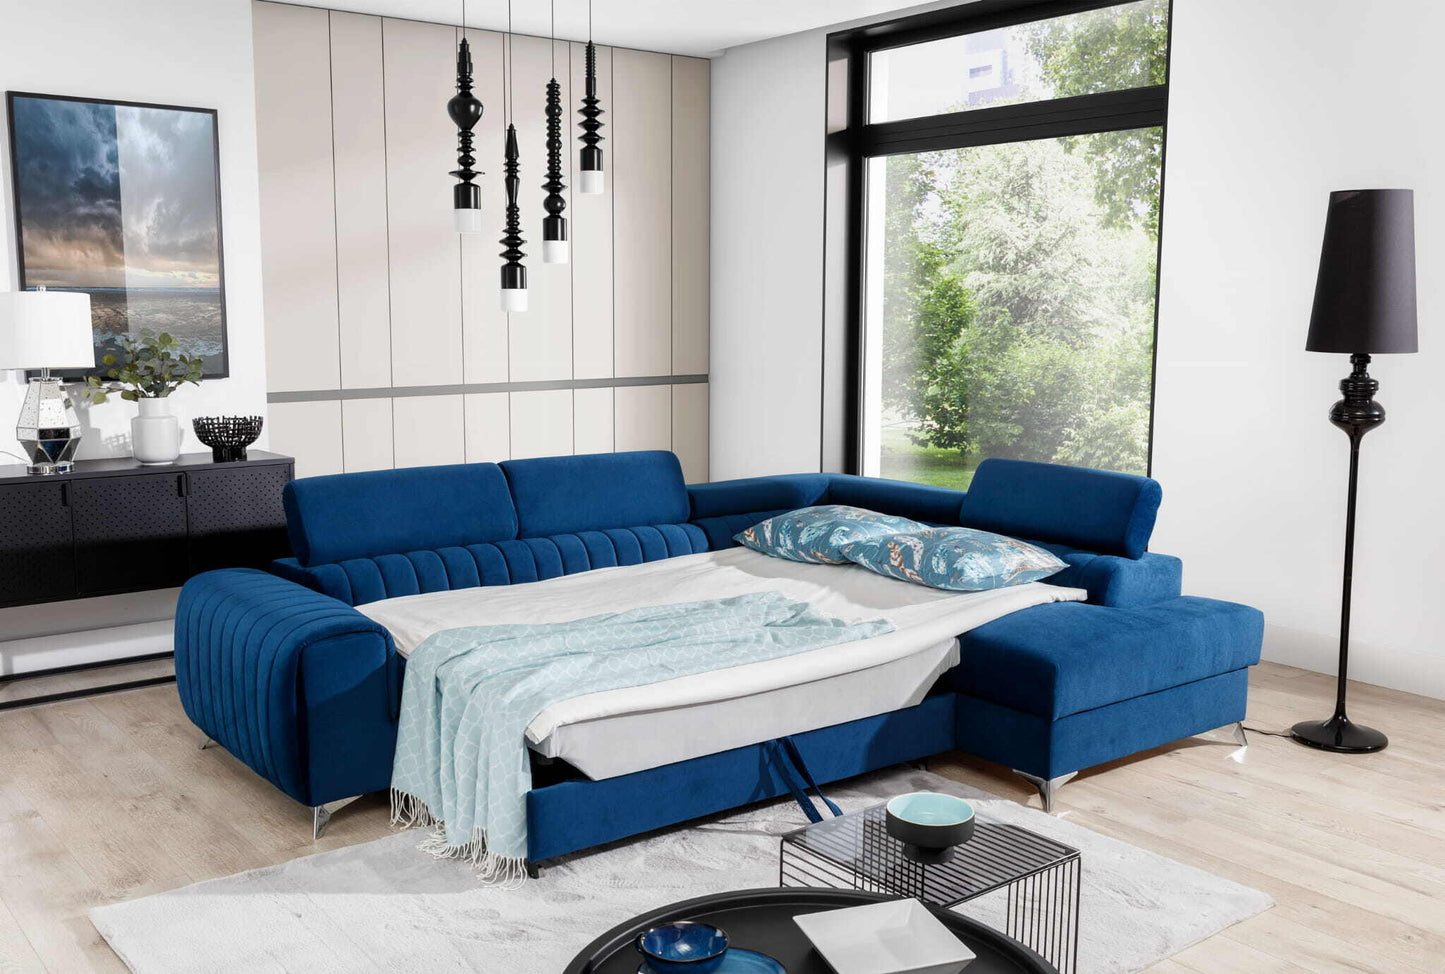 Wunderschöne Wohnlandschaft Laurence mit wunderschönem L-förmigem Sofa in blauer Farbe mit Bettfunktion